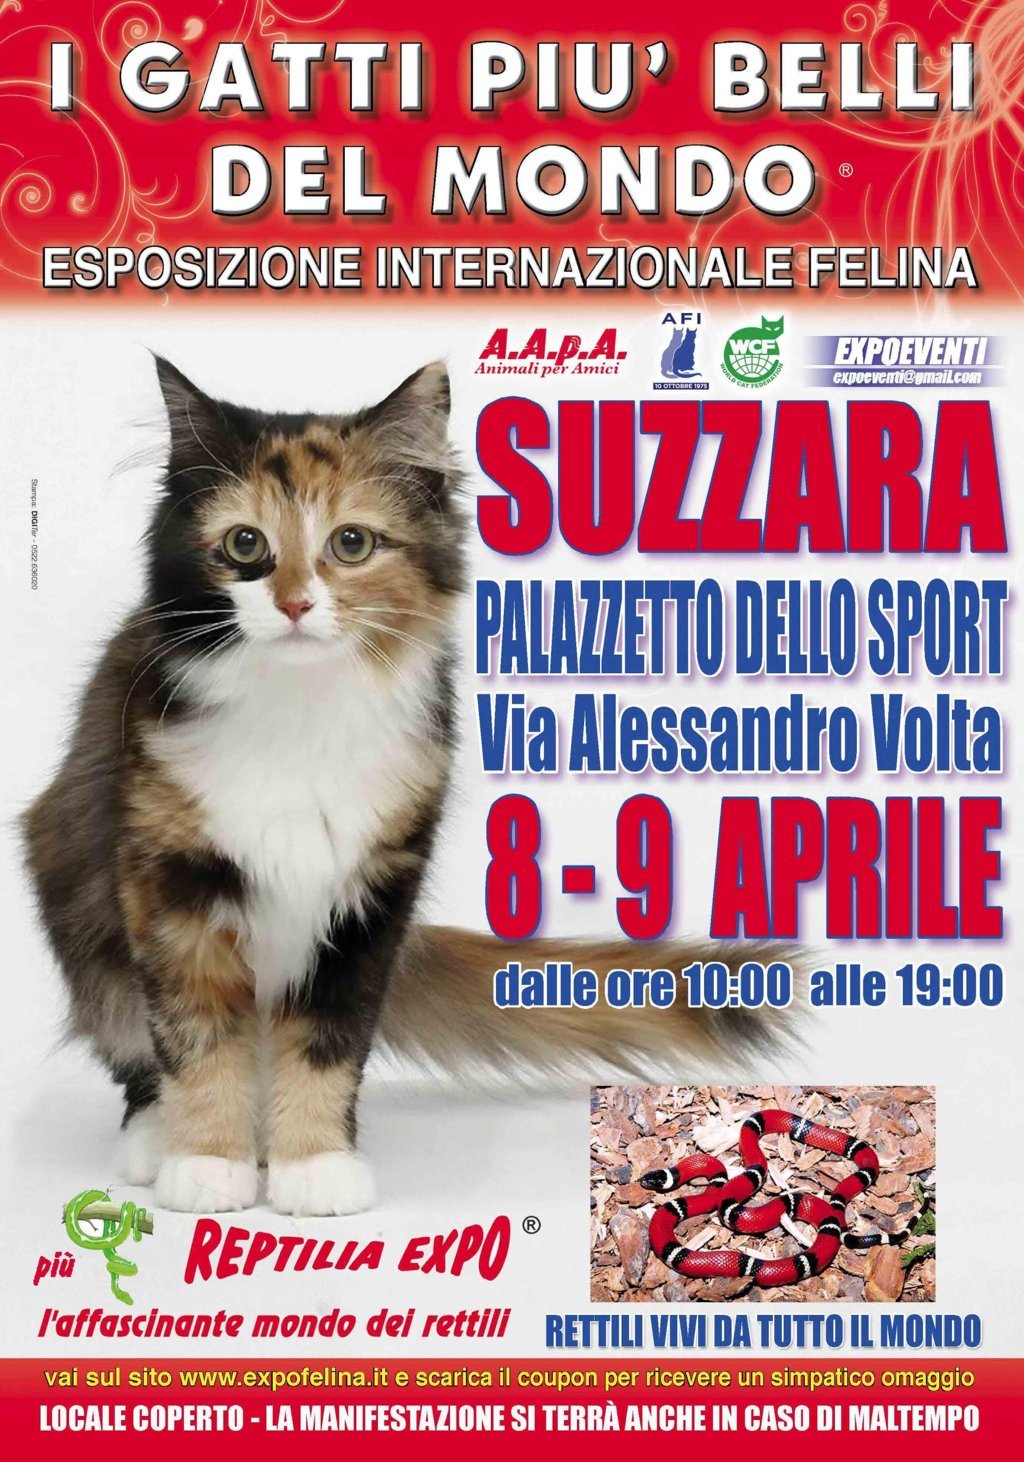 Foto 1 - I Gatti Più Belli del Mondo e i Rettili più Affascinanti in mostra al Palazzetto dello Sport di SUZZARA (MN) -- 8 e 9 Aprile